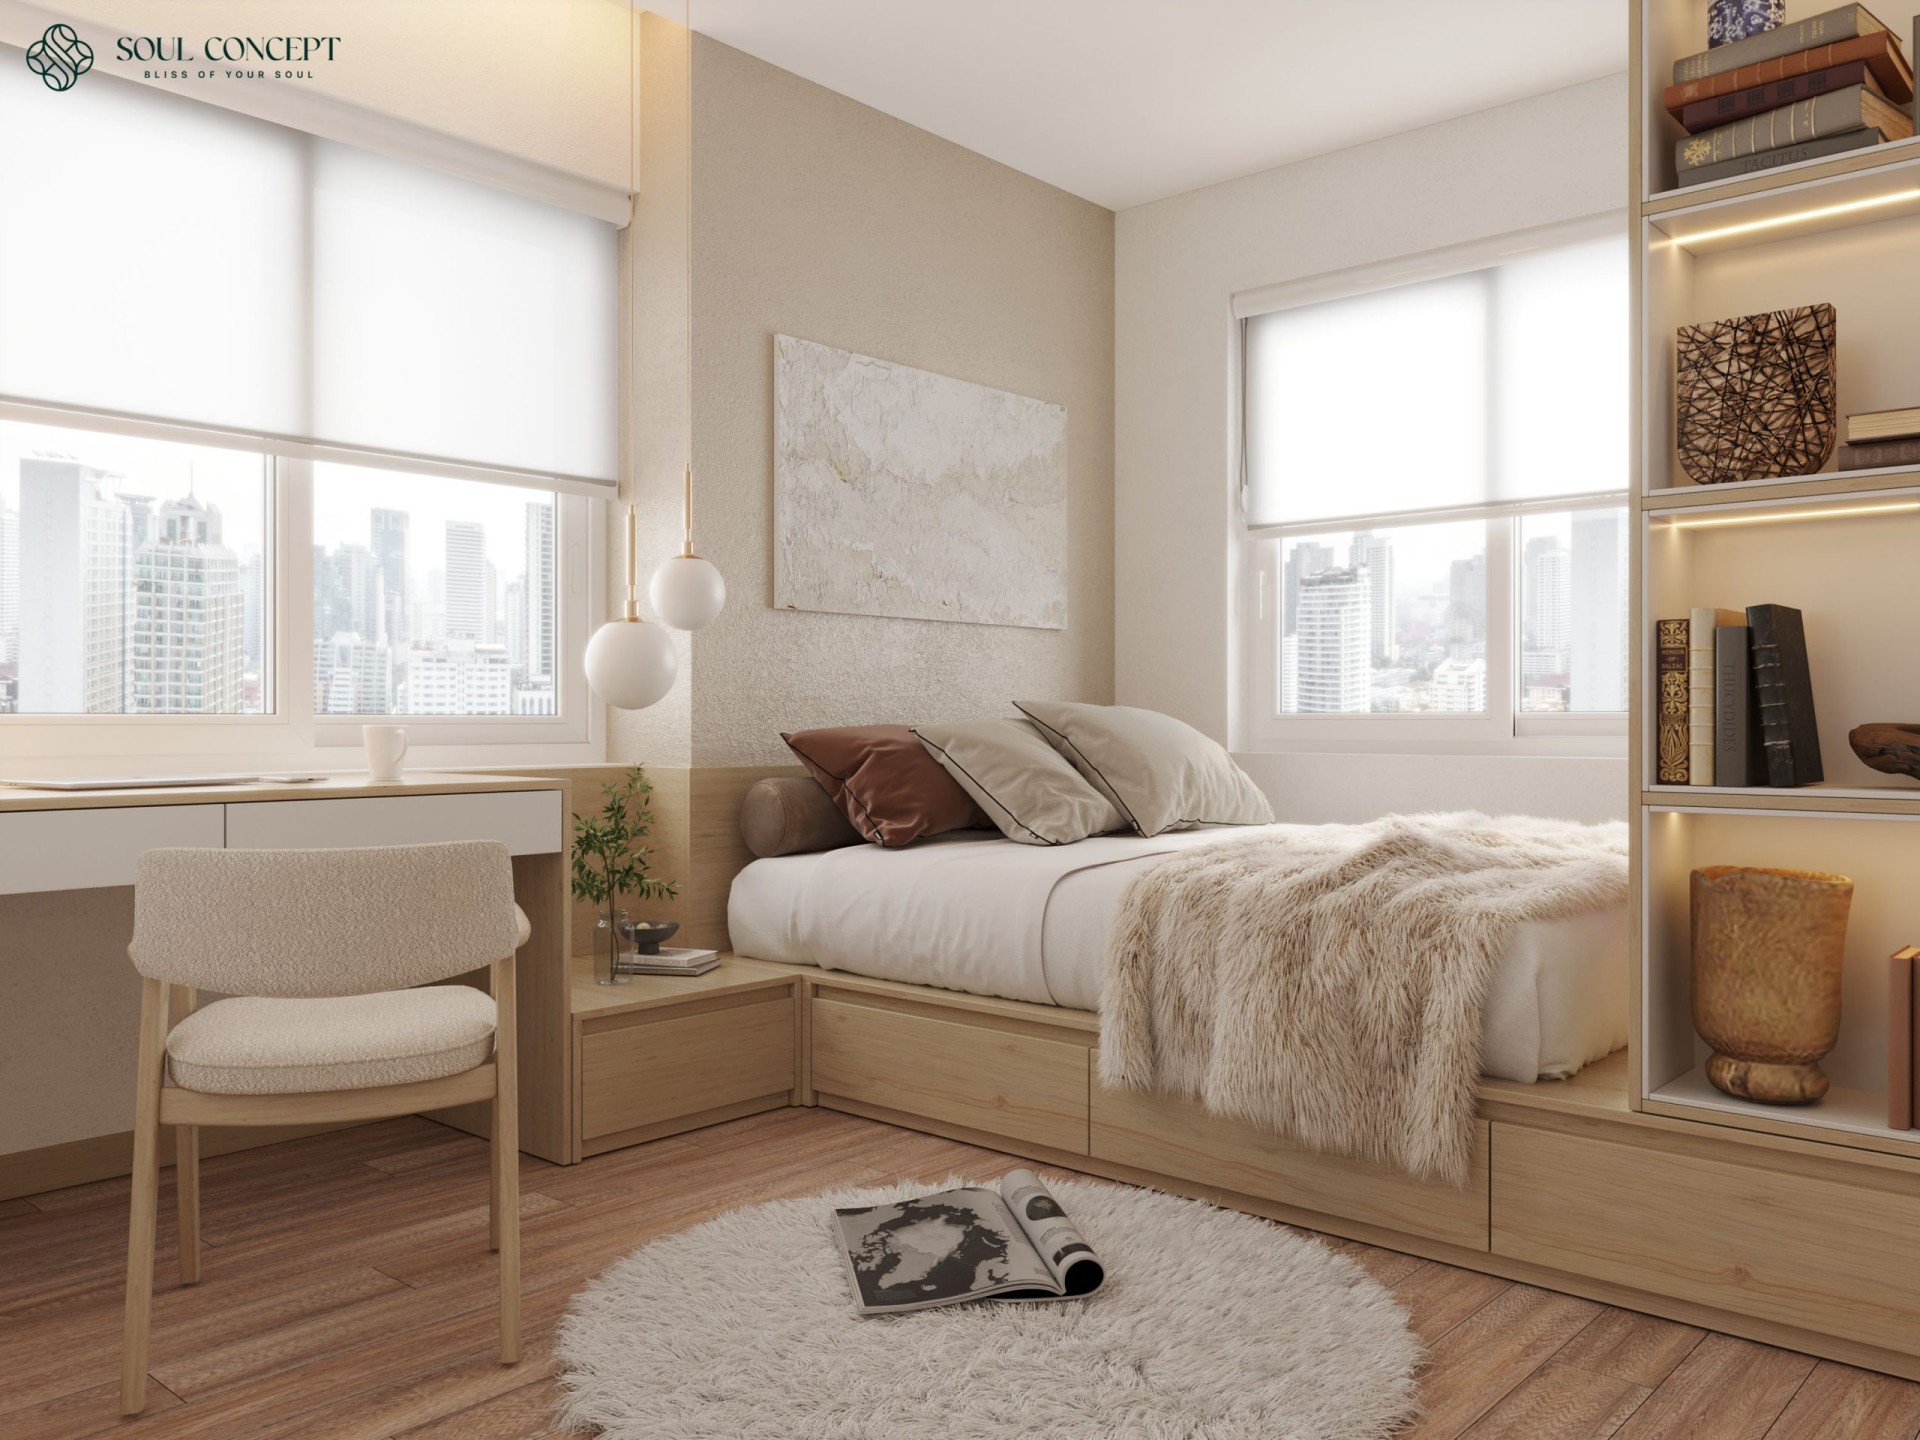 Thiết kế phòng ngủ chung cư đảm bảo đầy đủ ánh sáng